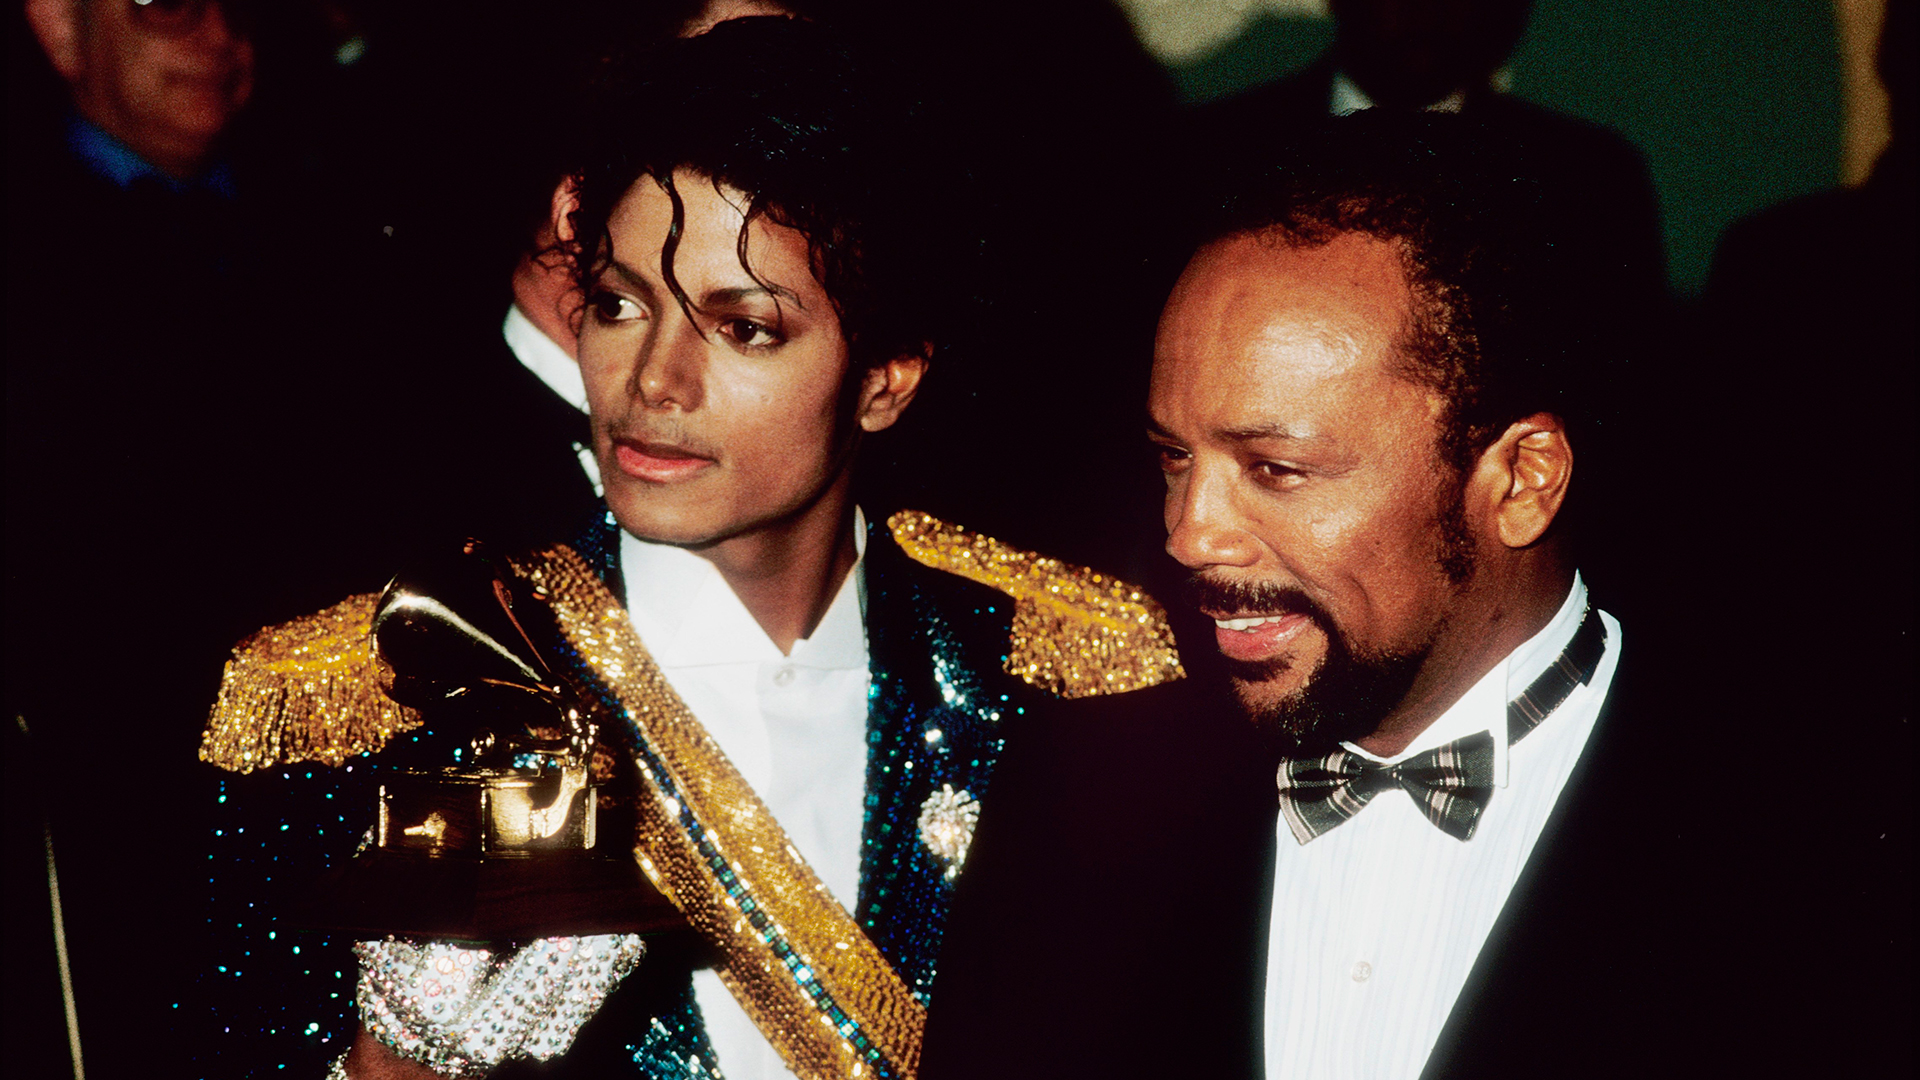 Michael Jackson escondido en el baño, Bob Dylan perdido y los celos de Prince: los secretos de “We Are The World” - Infobae